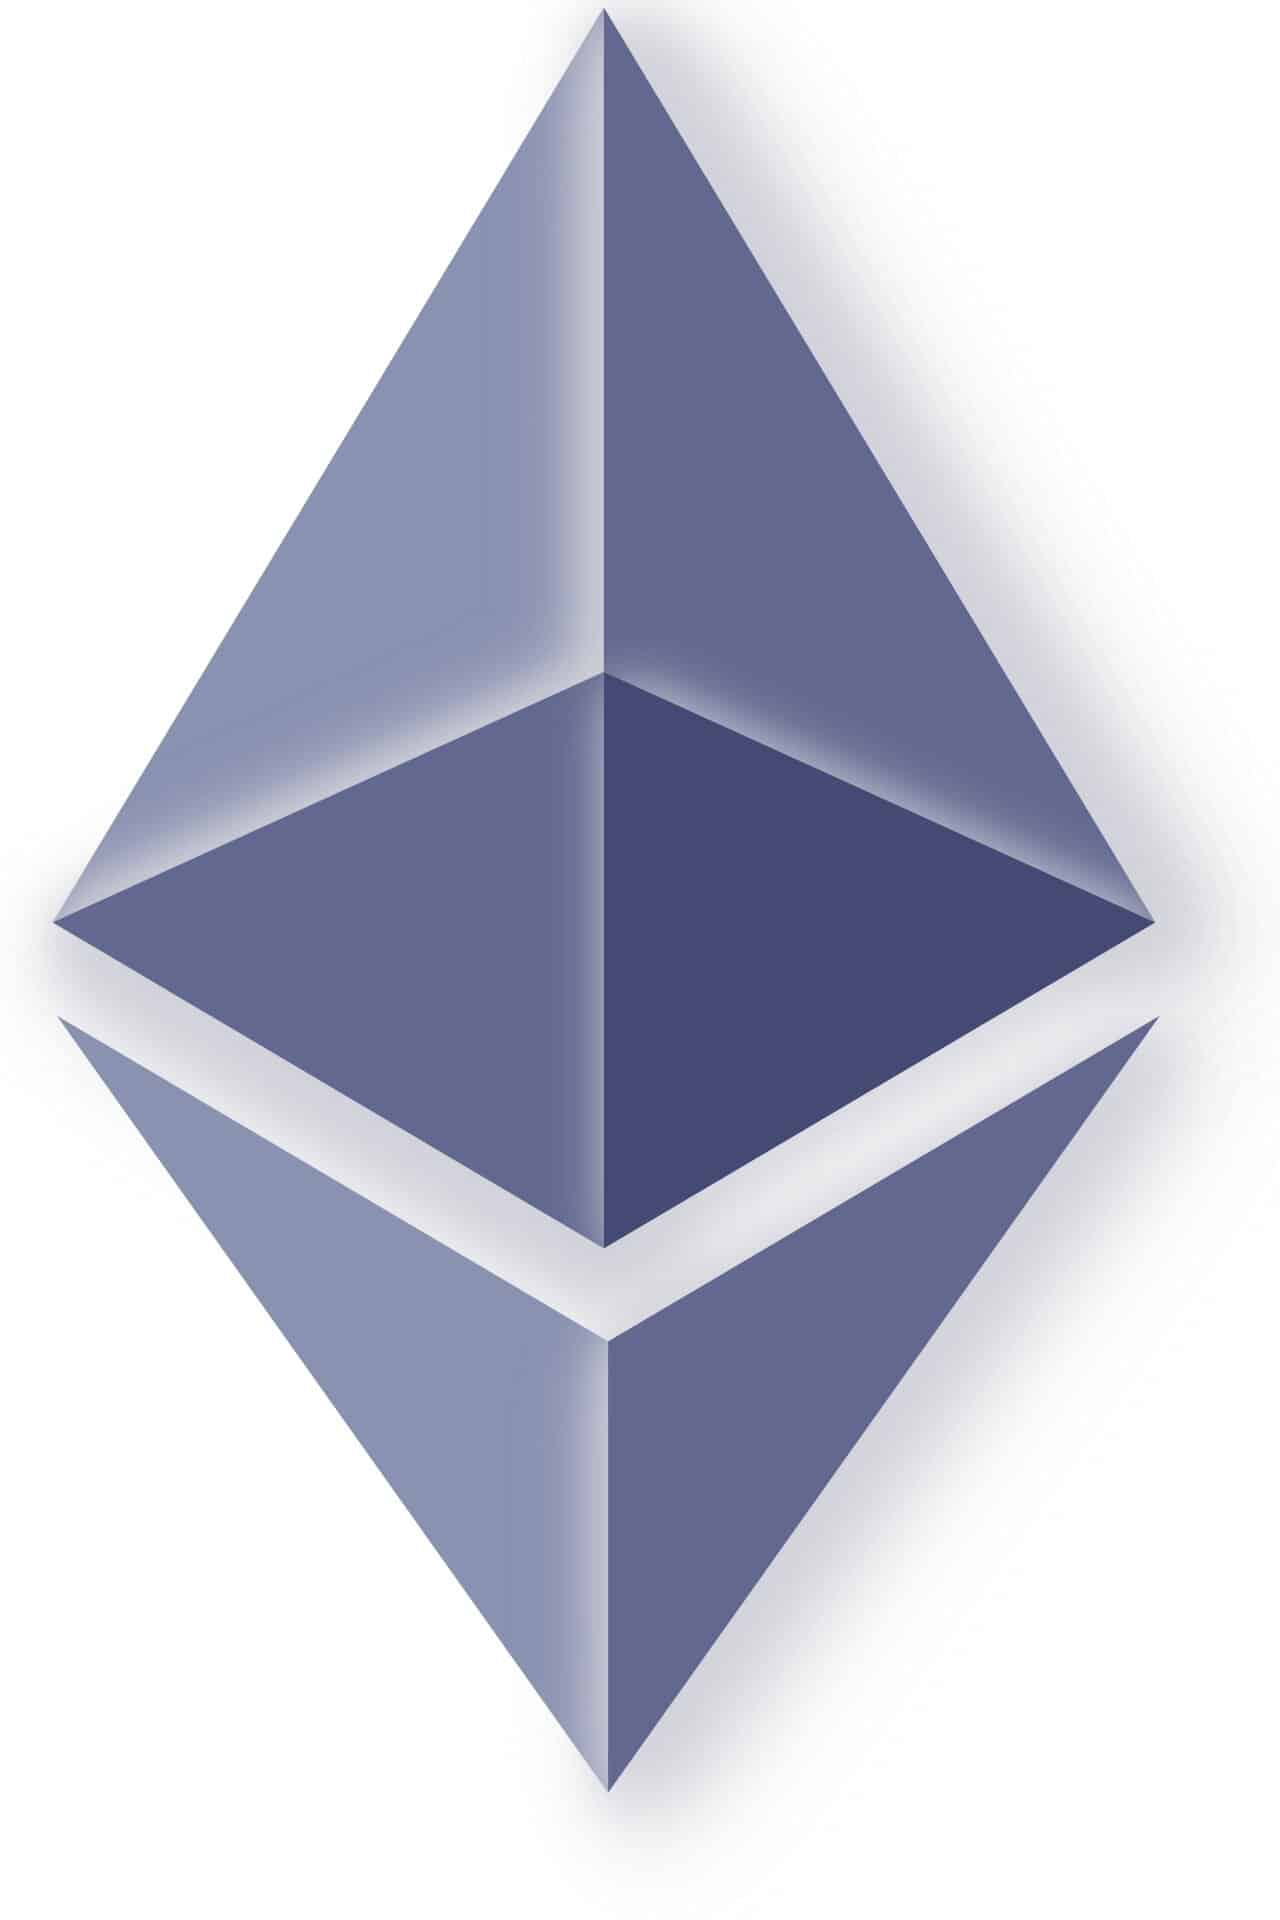 logo kryptoměny ethereum